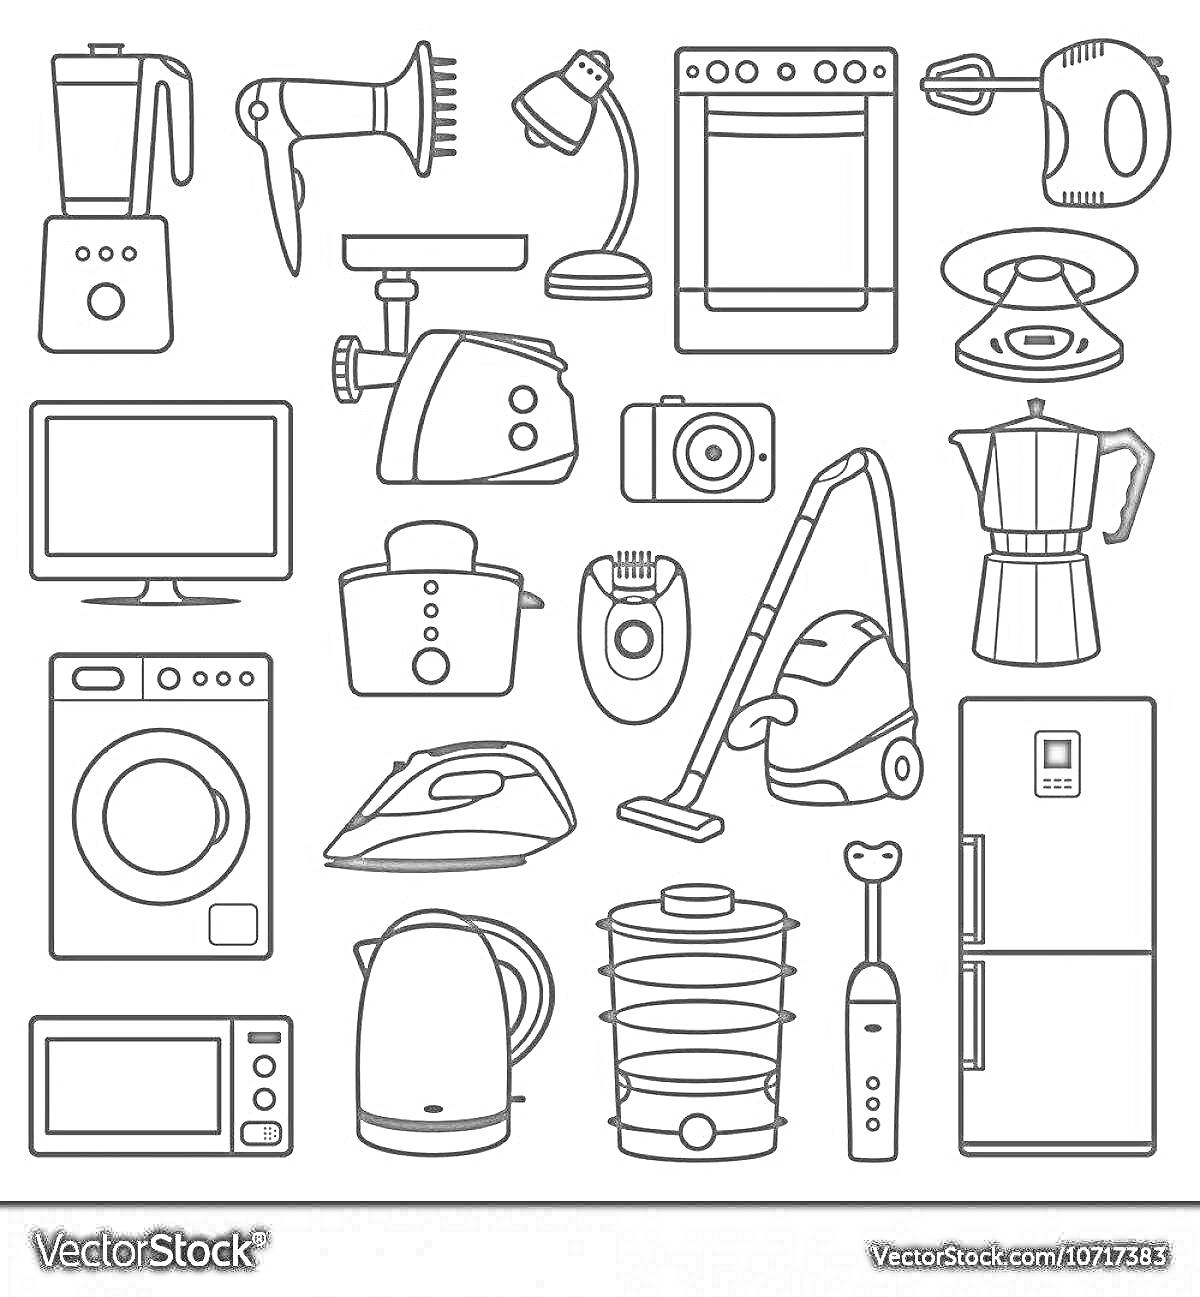 Раскраска Бытовые приборы для детей 5-6 лет — блендер, фен, настольная лампа, духовка, миксер, телевизор, тостер, фотоаппарат, кофеварка, пылесос, холодильник, микроволновка, стиральная машина, утюг, чайник, отпариватель, стайлер для волос, вентилятор, электрическа